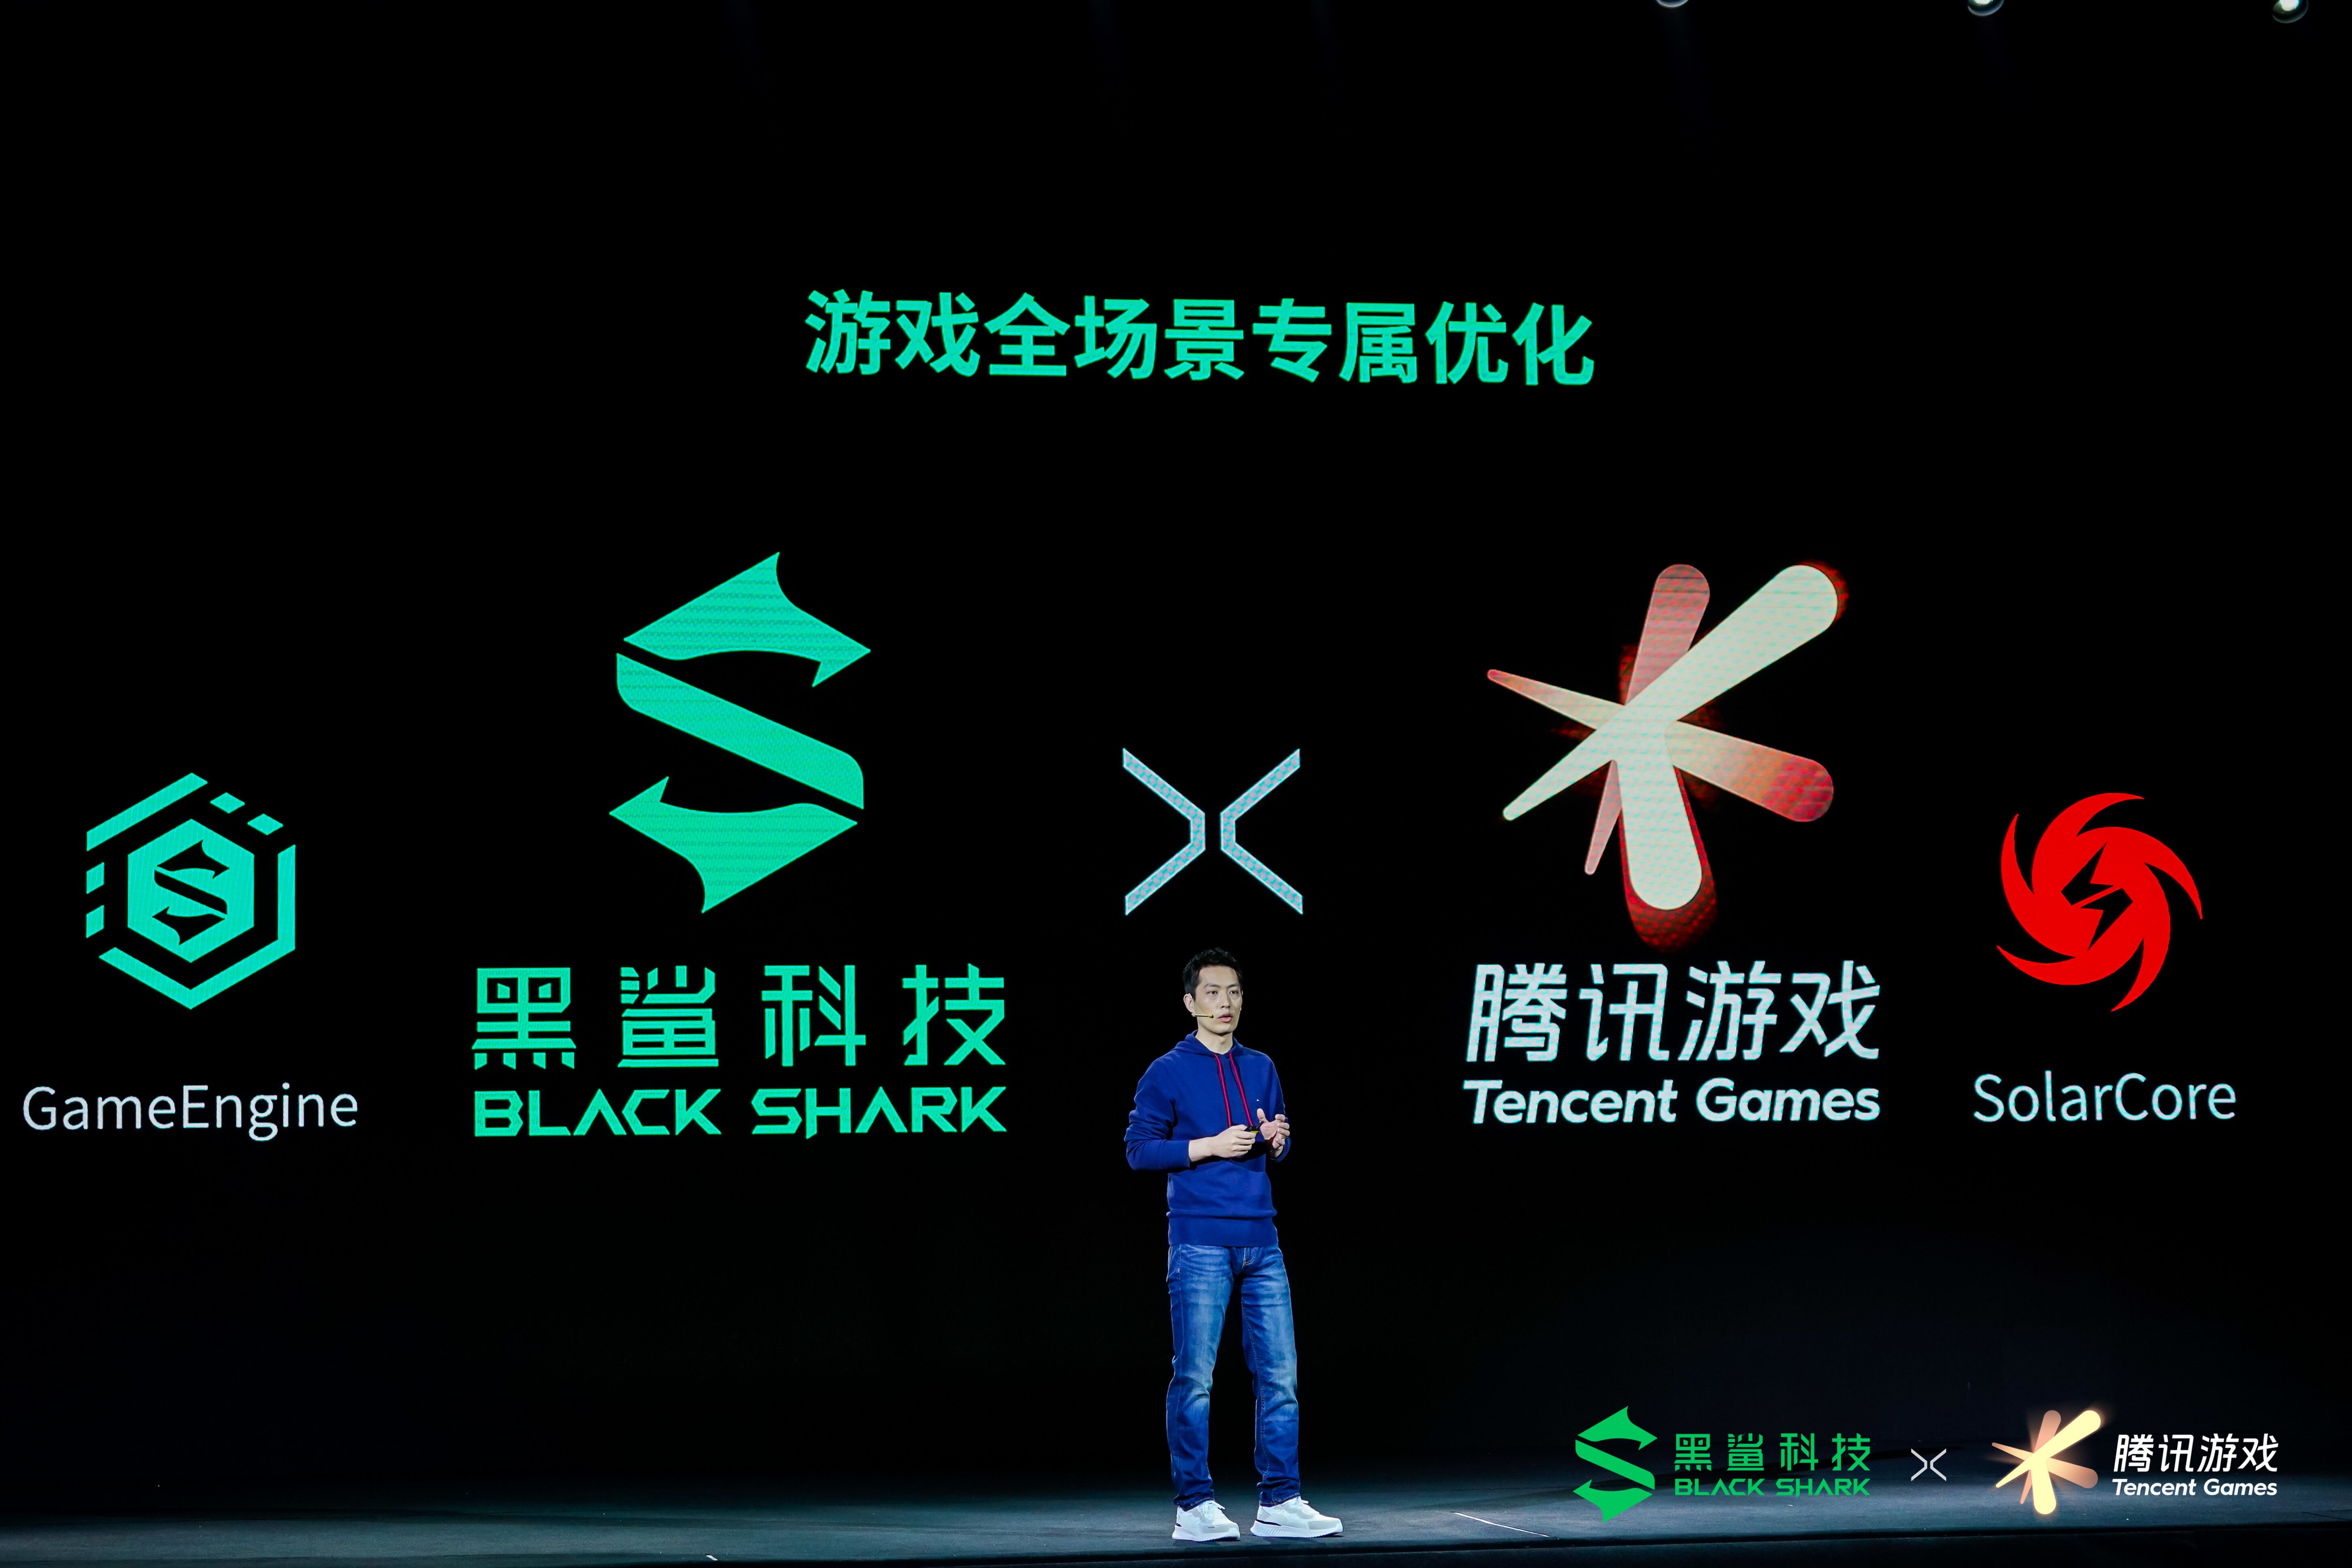 腾讯游戏深度定制 腾讯黑鲨游戏手机3系新品正式亮相